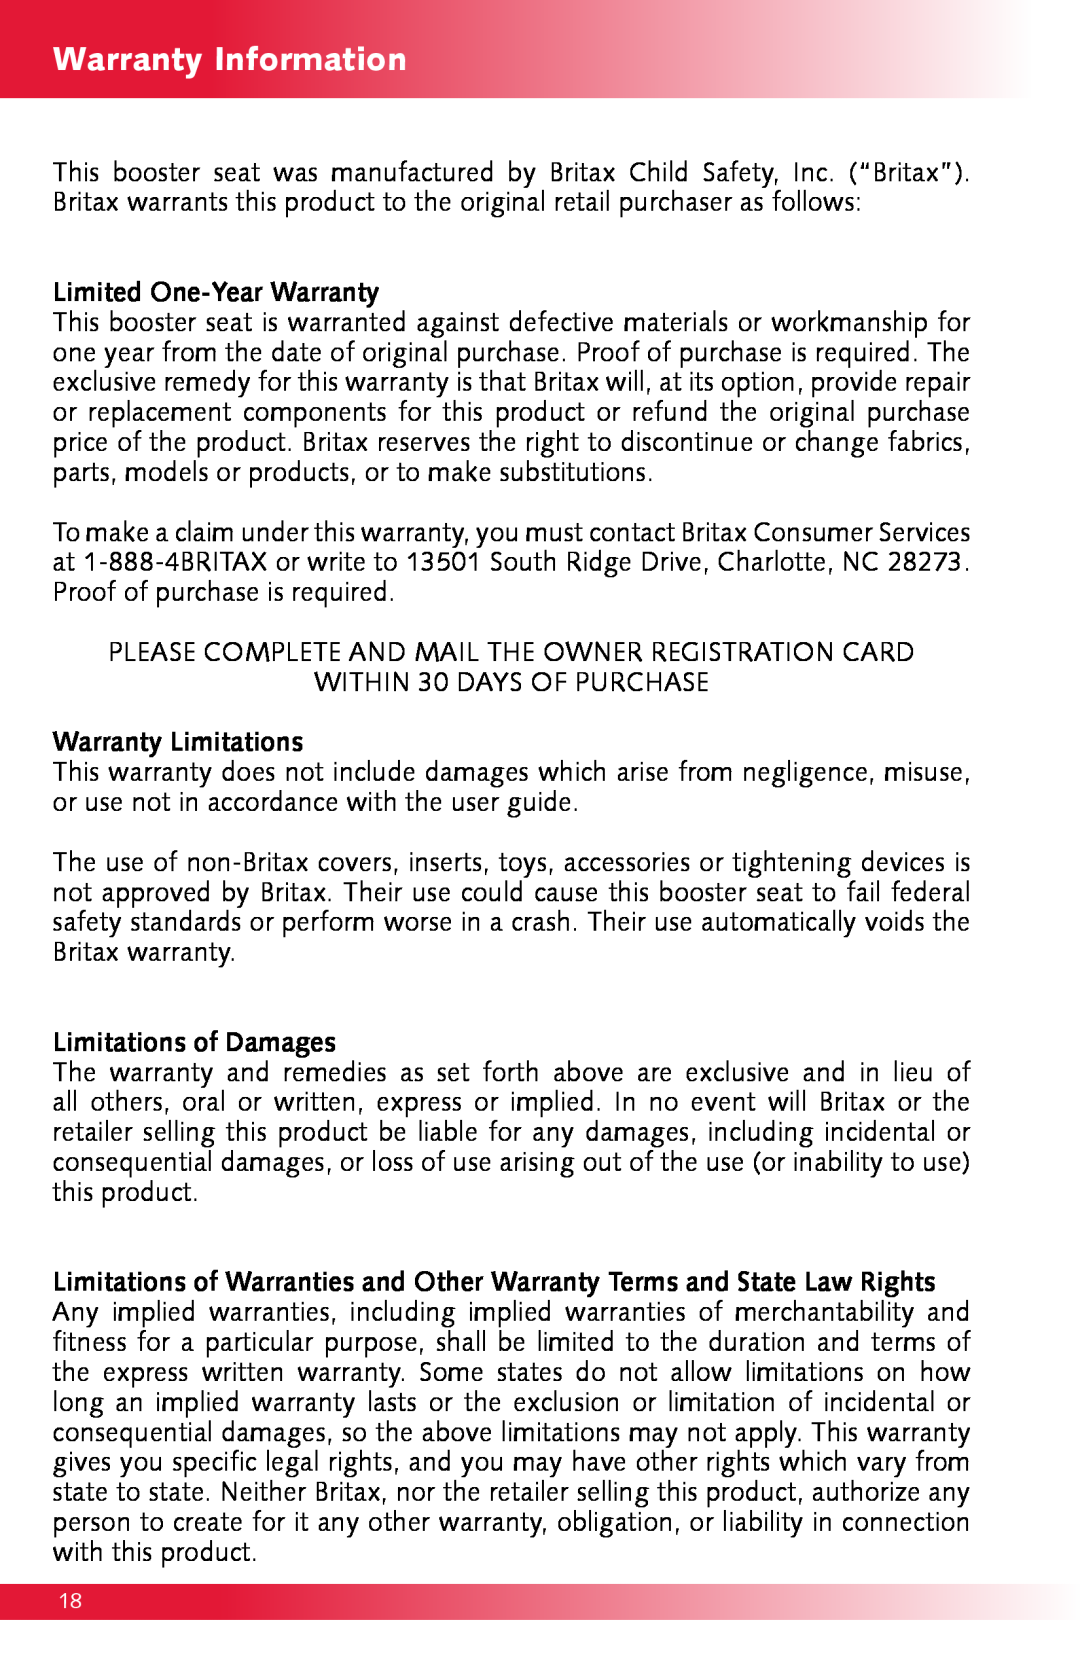 Britax Monarch manual Warranty Information 